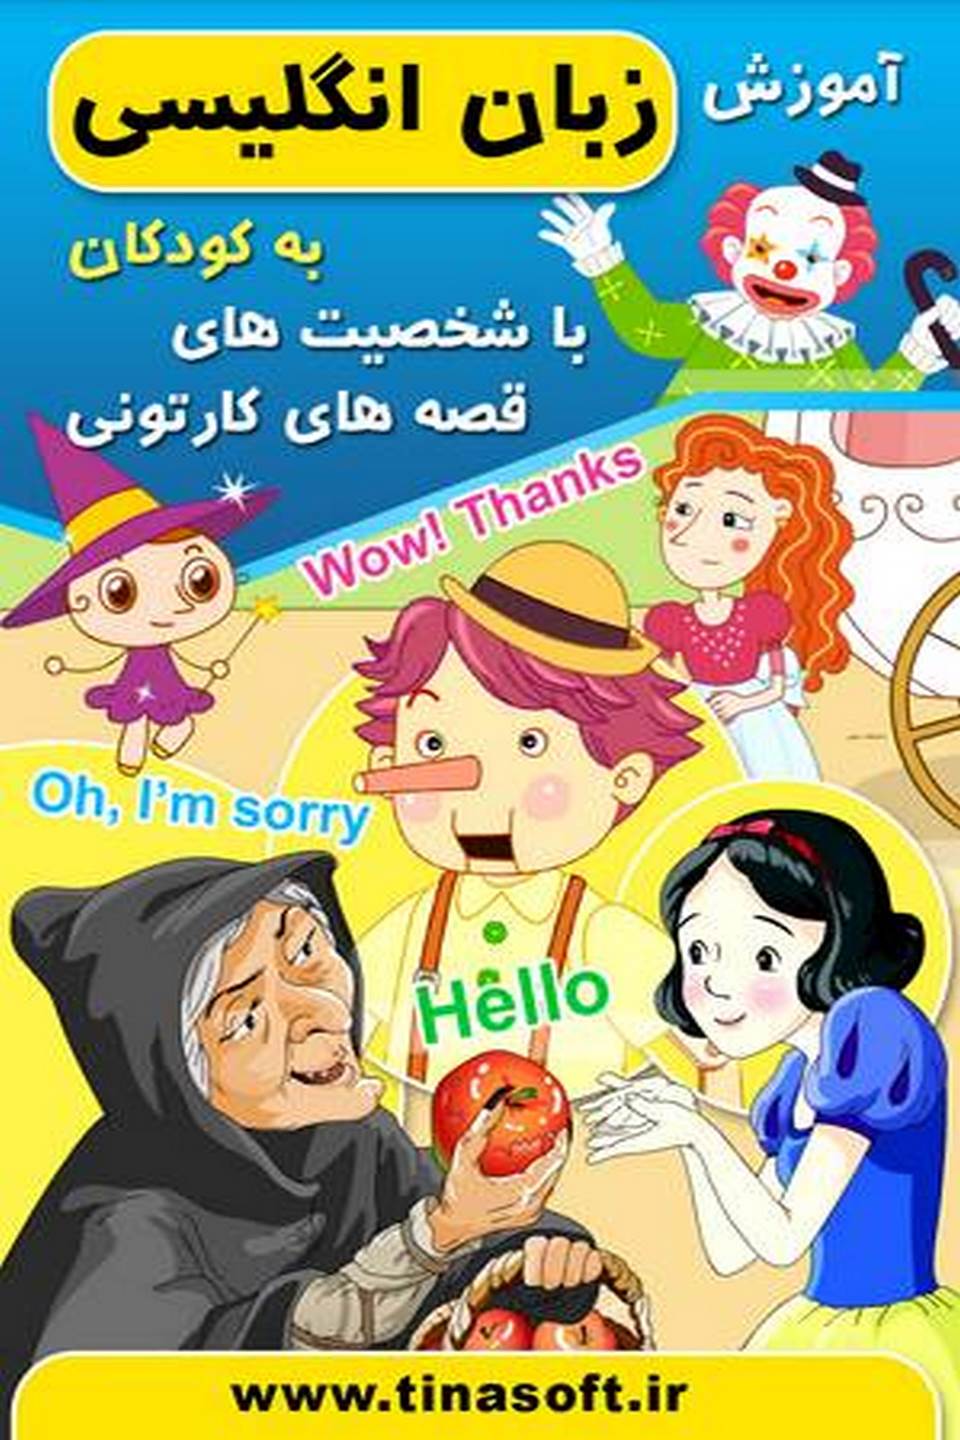 آموزش زبان به کودکان با قصه کارتونی